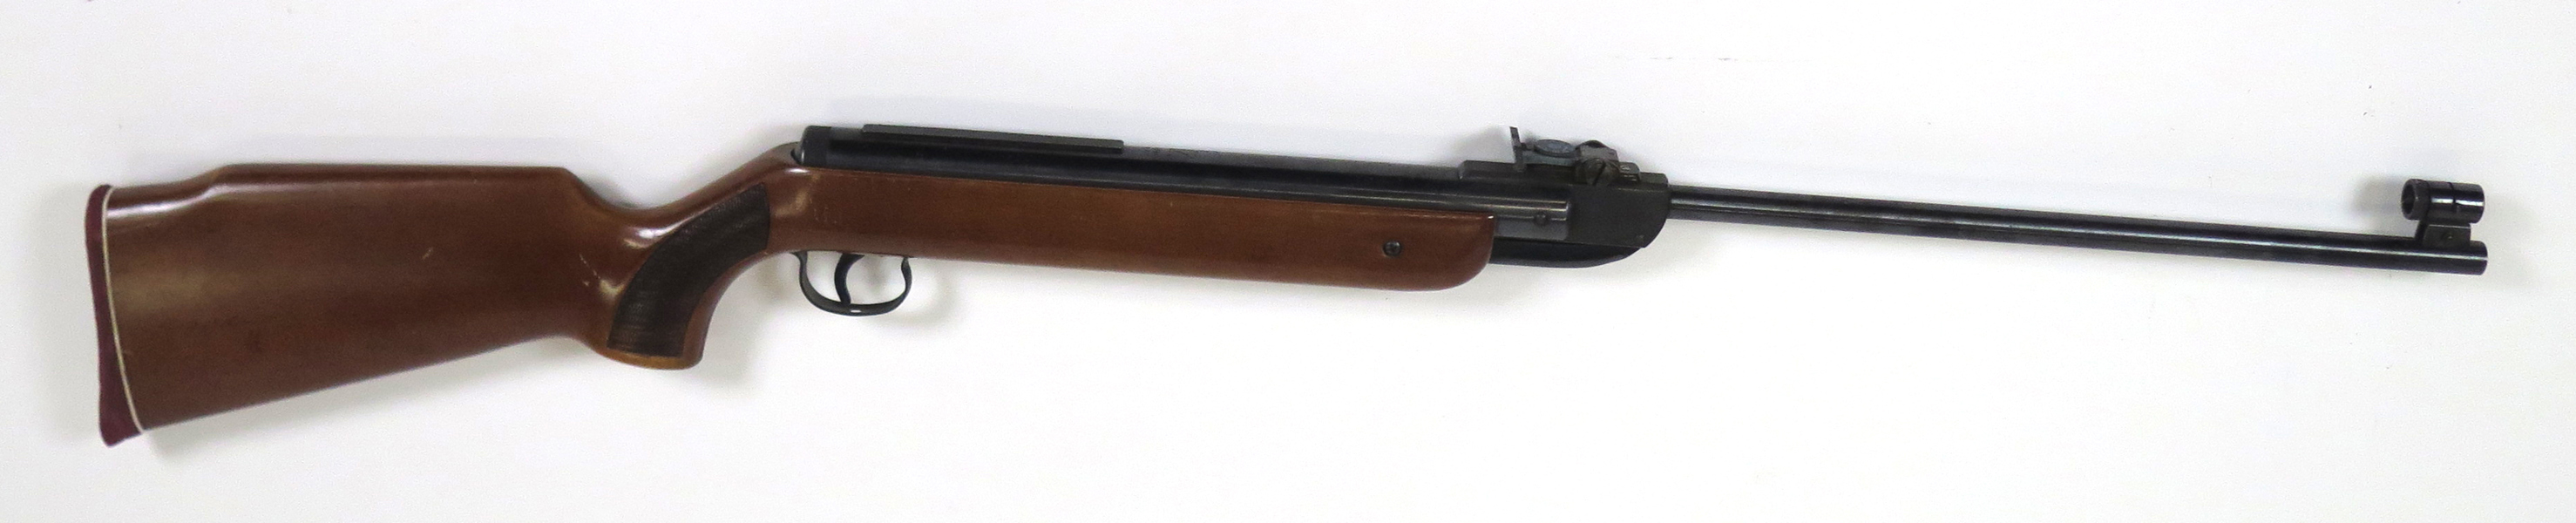 Luftgevär, Diana, modell 35, kaliber 4,5 mm_35510a_8dc11162ee5e0bf_lg.jpeg